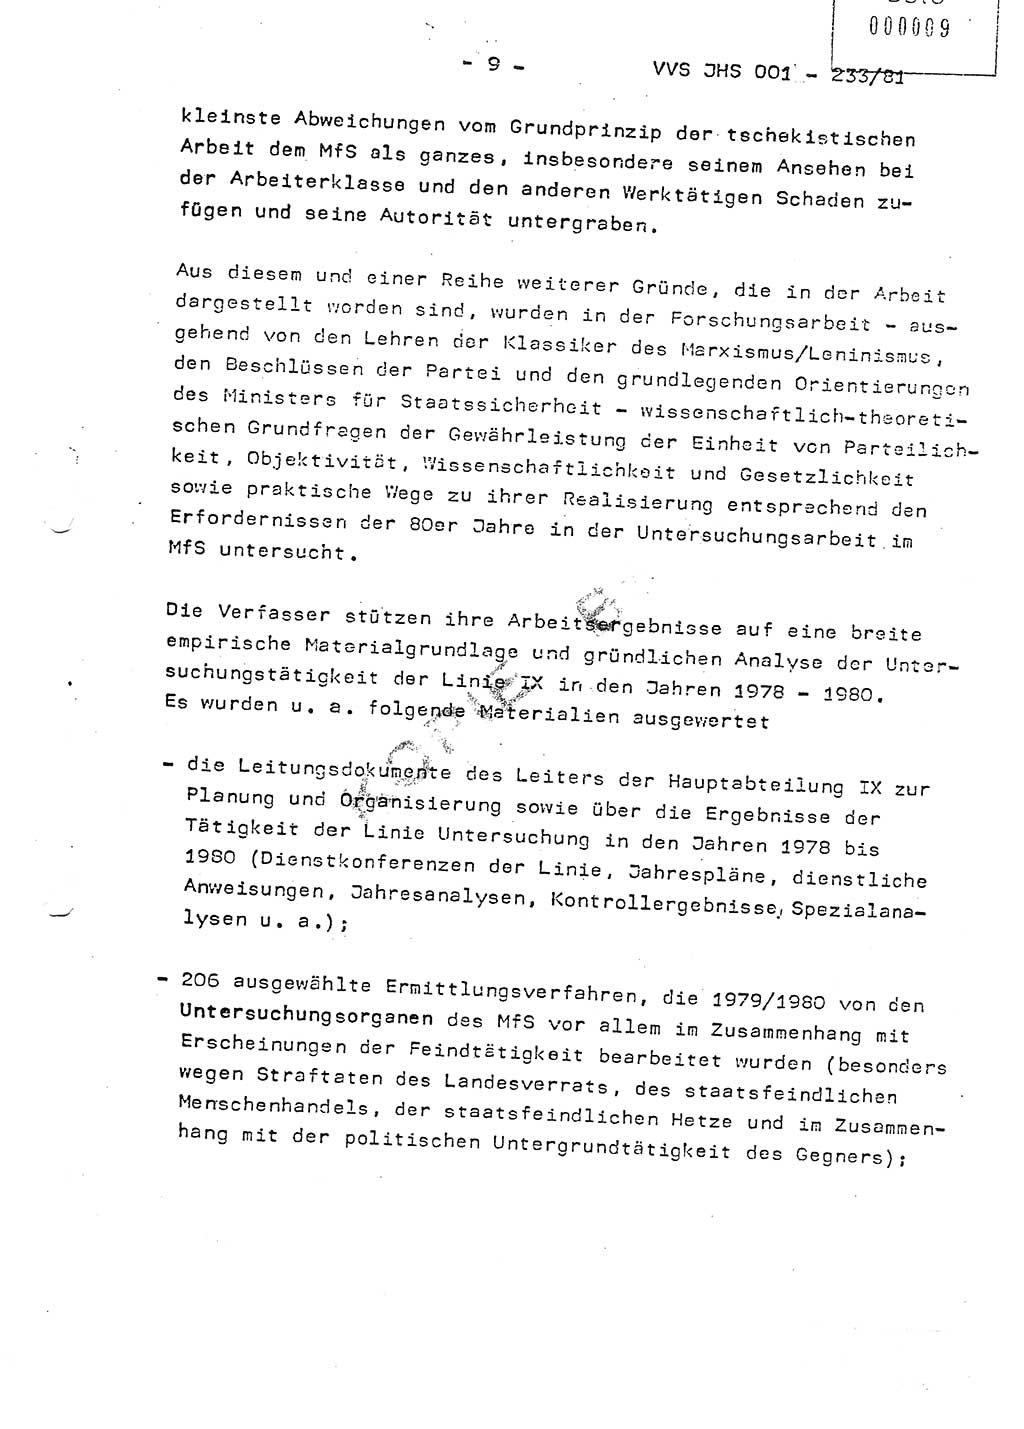 Dissertation Oberstleutnant Horst Zank (JHS), Oberstleutnant Dr. Karl-Heinz Knoblauch (JHS), Oberstleutnant Gustav-Adolf Kowalewski (HA Ⅸ), Oberstleutnant Wolfgang Plötner (HA Ⅸ), Ministerium für Staatssicherheit (MfS) [Deutsche Demokratische Republik (DDR)], Juristische Hochschule (JHS), Vertrauliche Verschlußsache (VVS) o001-233/81, Potsdam 1981, Blatt 9 (Diss. MfS DDR JHS VVS o001-233/81 1981, Bl. 9)